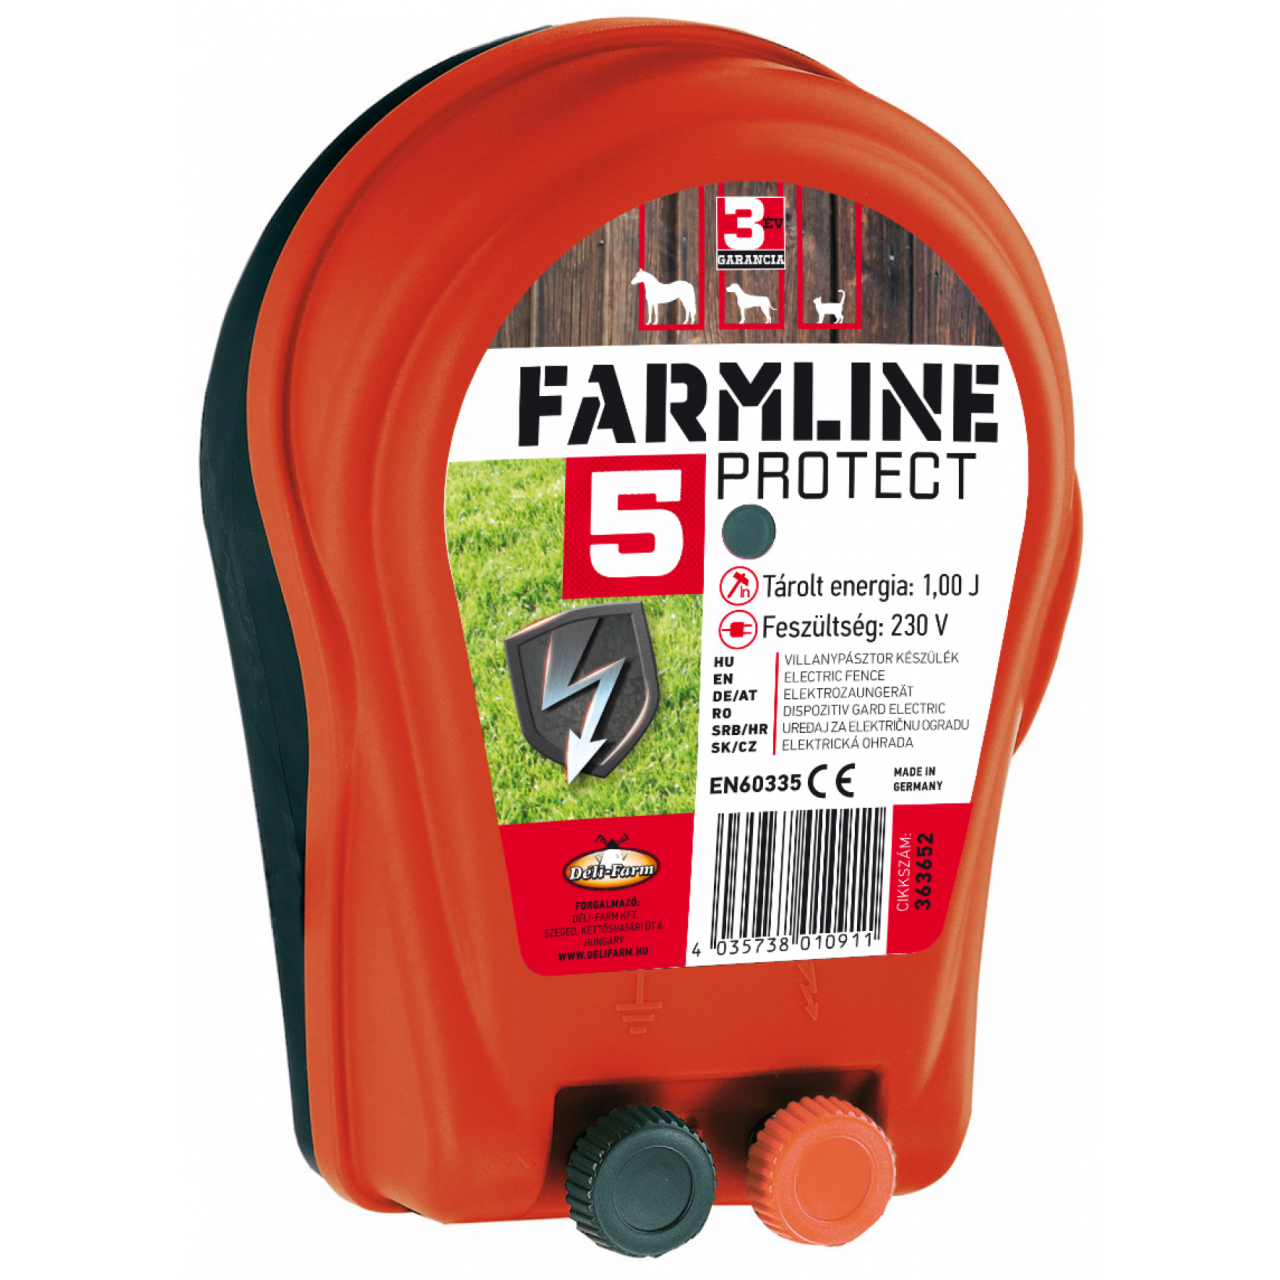 FarmLine Protect 5 villanypásztor készülék - 230 V, 1 J